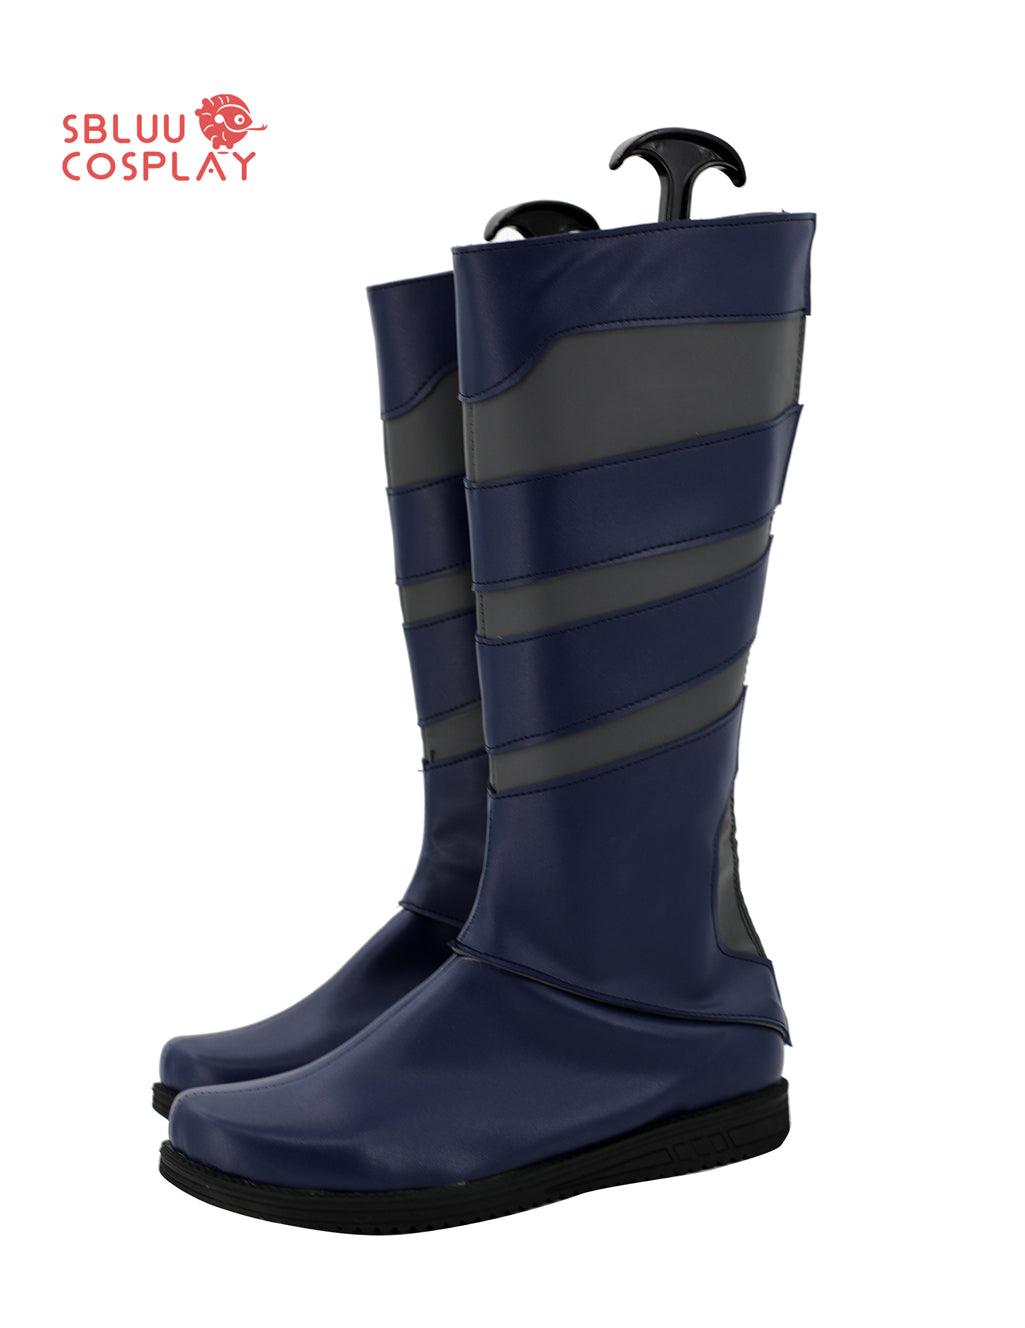 SBluuCosplay LOL Yone Cosplay Shoes Custom Made Boots - SBluuCosplay